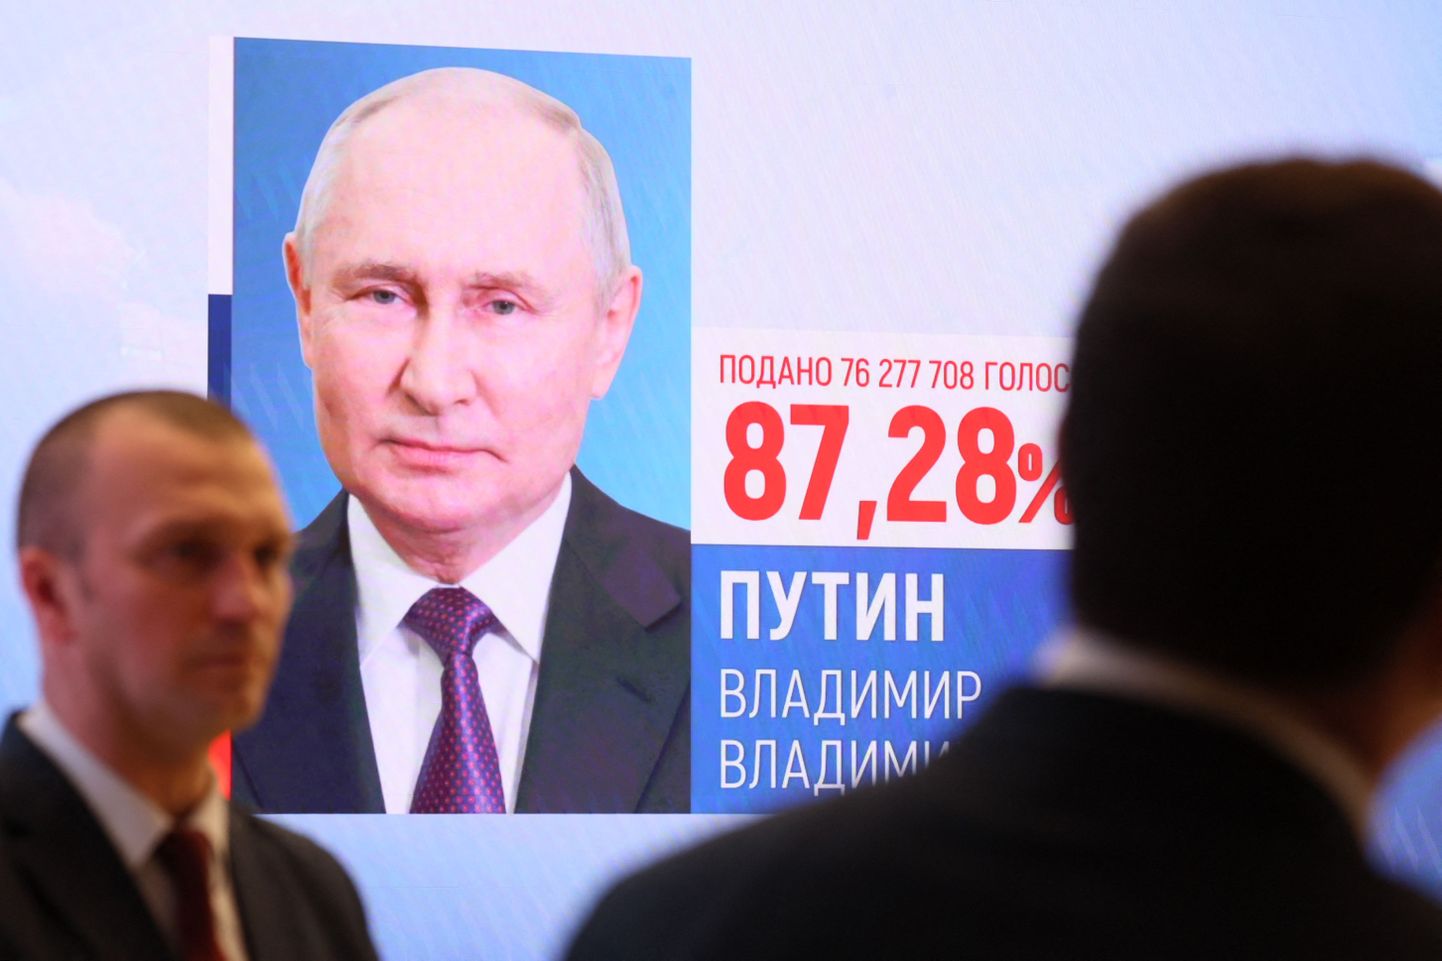 Итоги "выборов" Путина